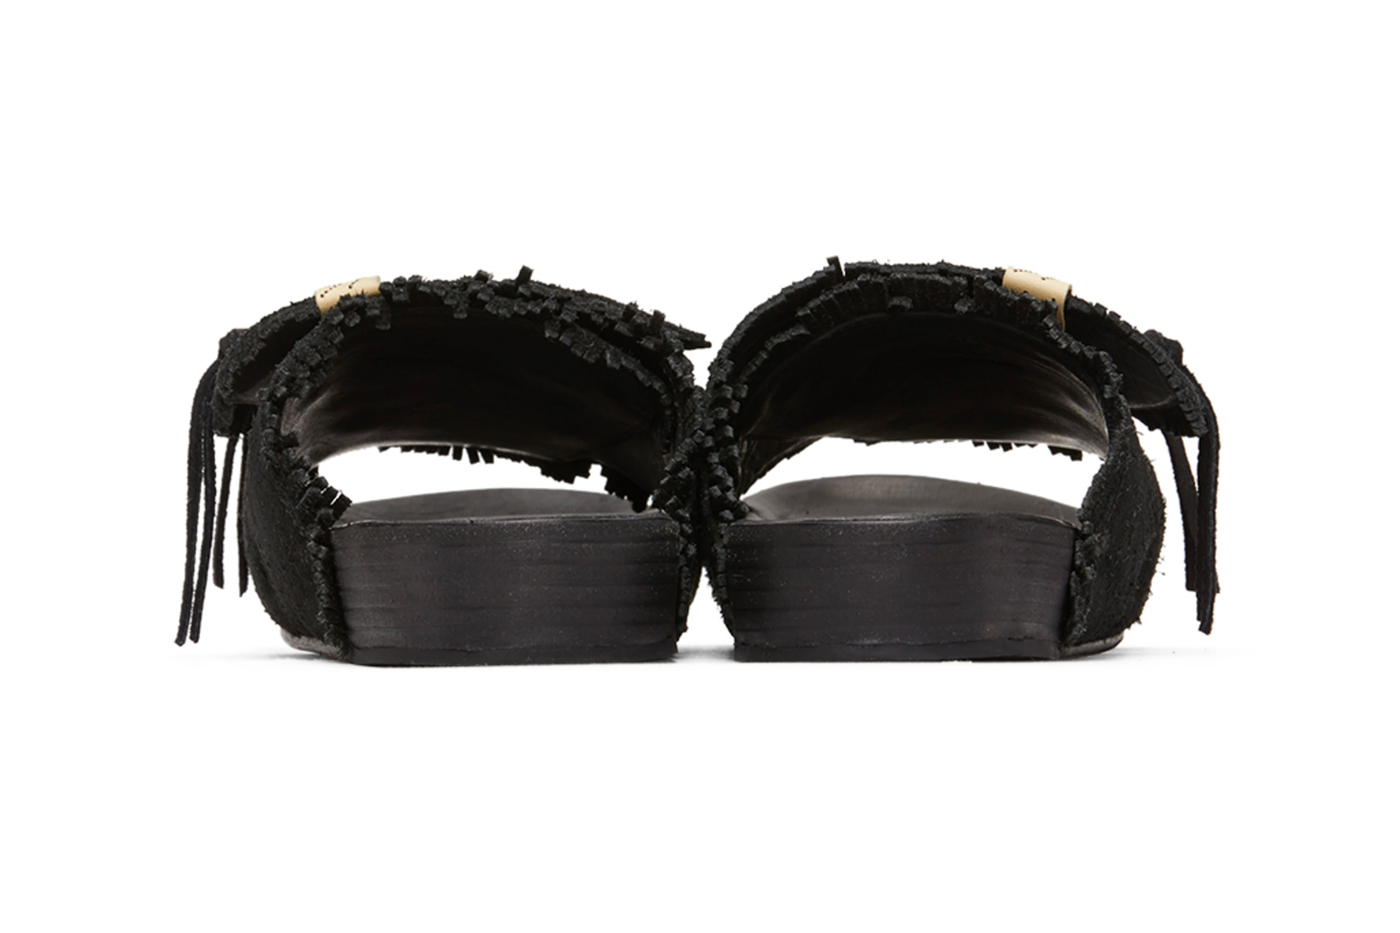 https://hypebeast.com/image/2020/05/visvim-christo-shaman-folk-sandals-in-black-release-004.jpg